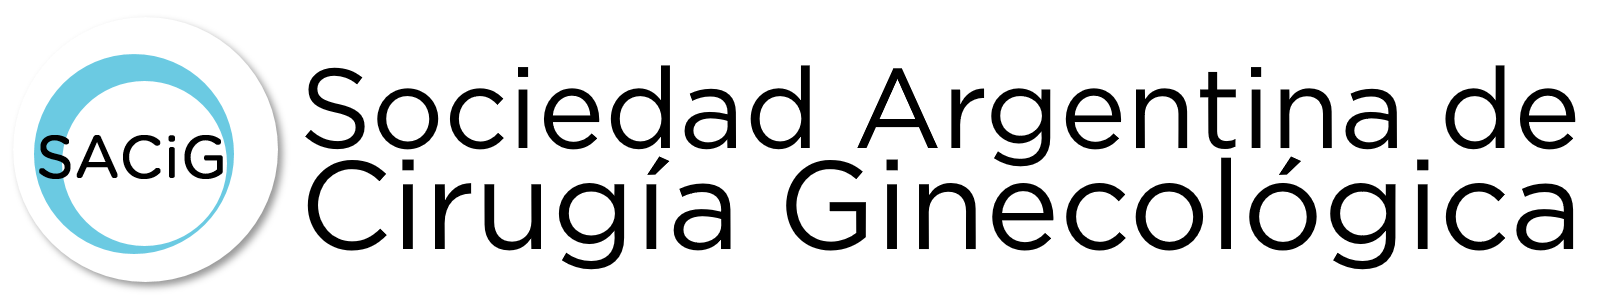 Logo SACIG OK